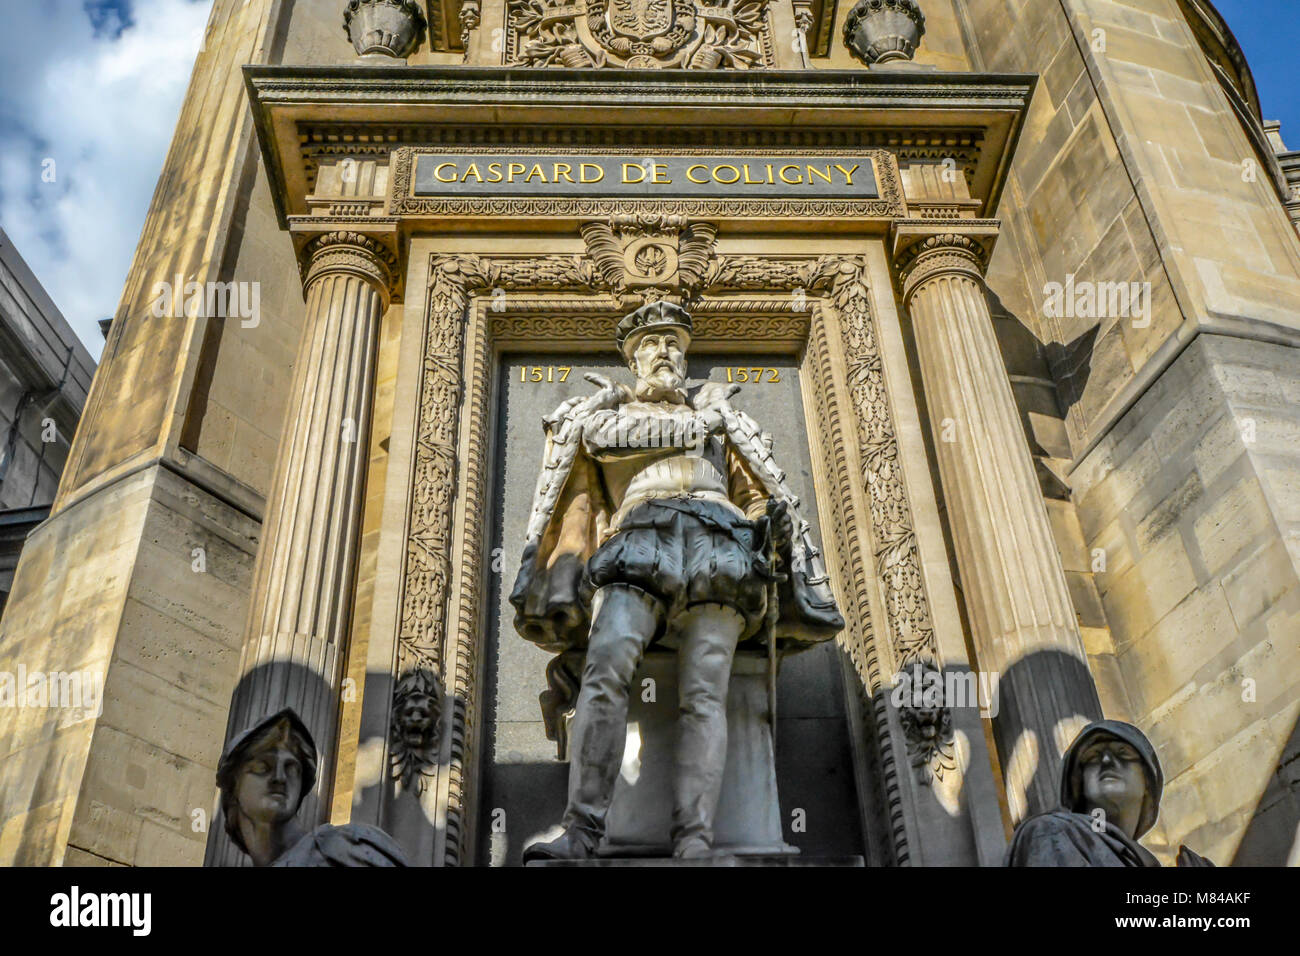 The Monument de l'Amiral Gaspard de Coligny on Rue du Rivoli in the 1st arrondissement of Paris France Stock Photo